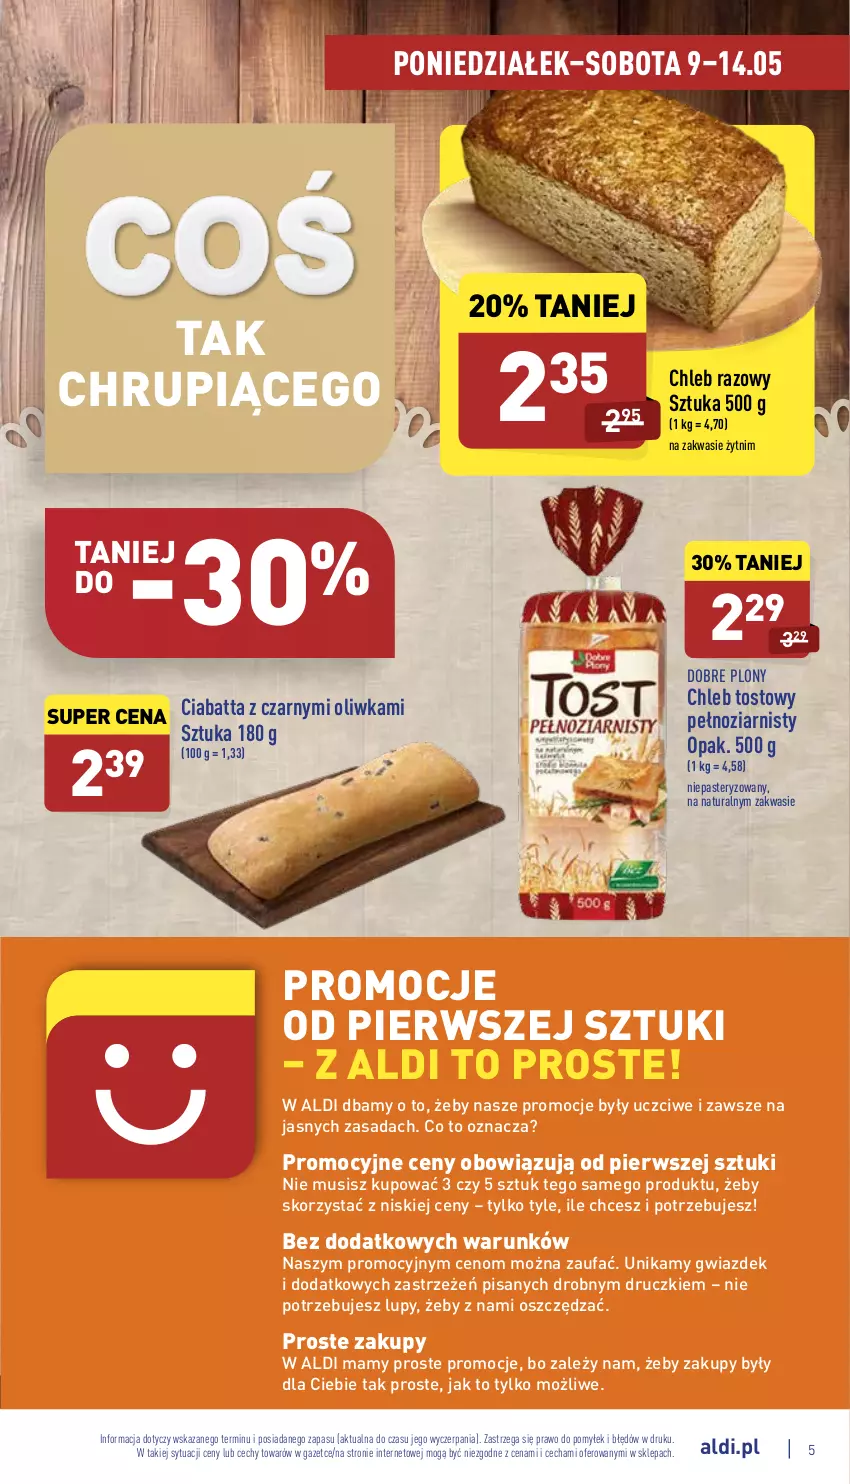 Gazetka promocyjna Aldi - Katalog spożywczy - ważna 09.05 do 14.05.2022 - strona 5 - produkty: Chleb, Chleb tostowy, Ciabatta, Fa, Mus